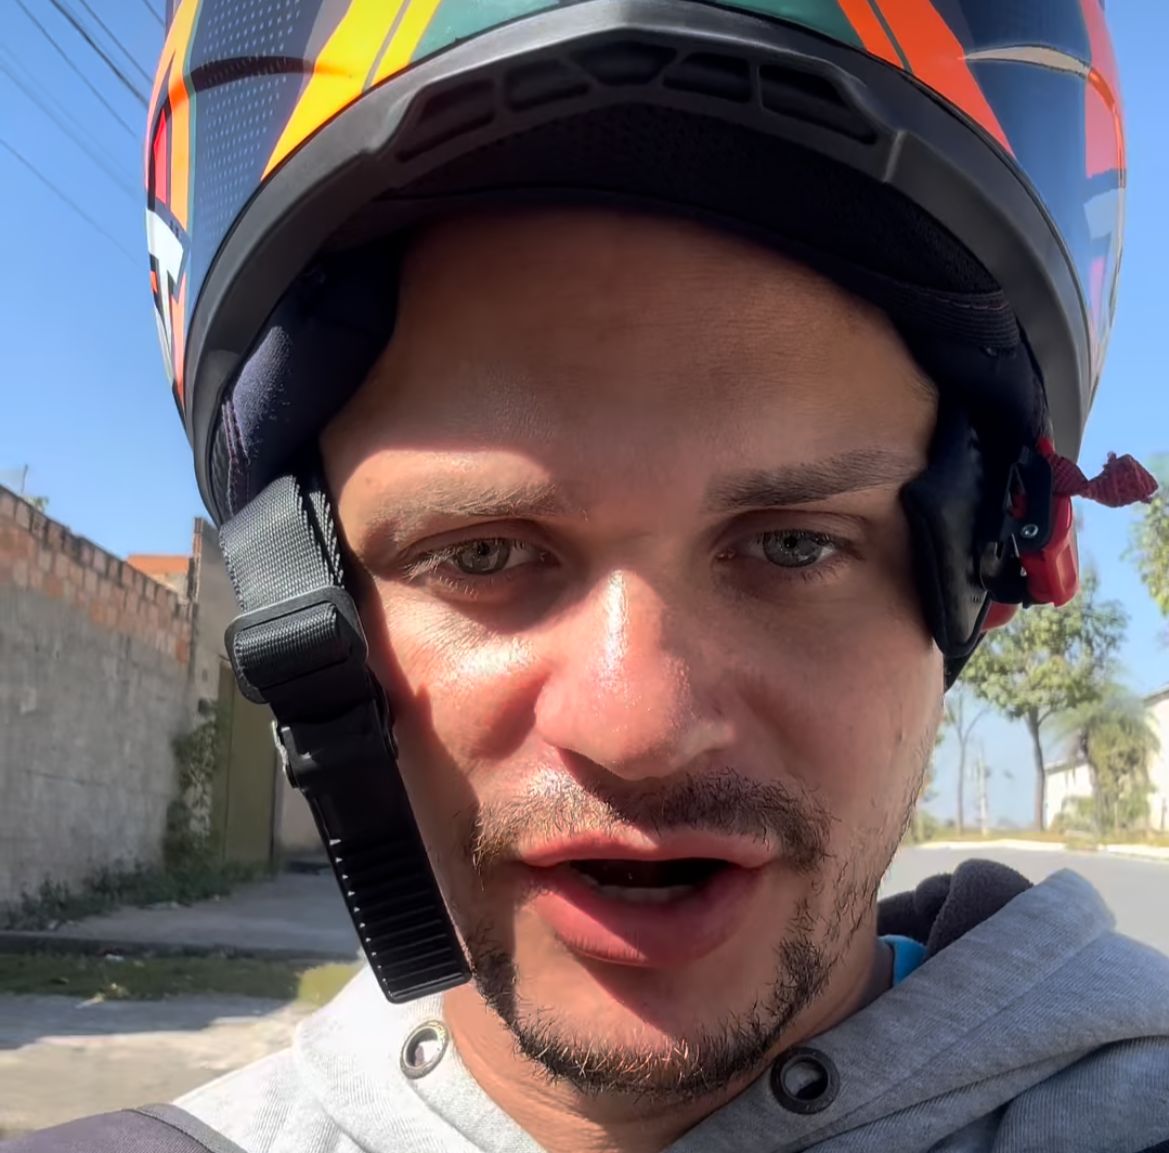 [VÍDEO] Motoboy conta experiência inusitada com passageira e diverte a internet